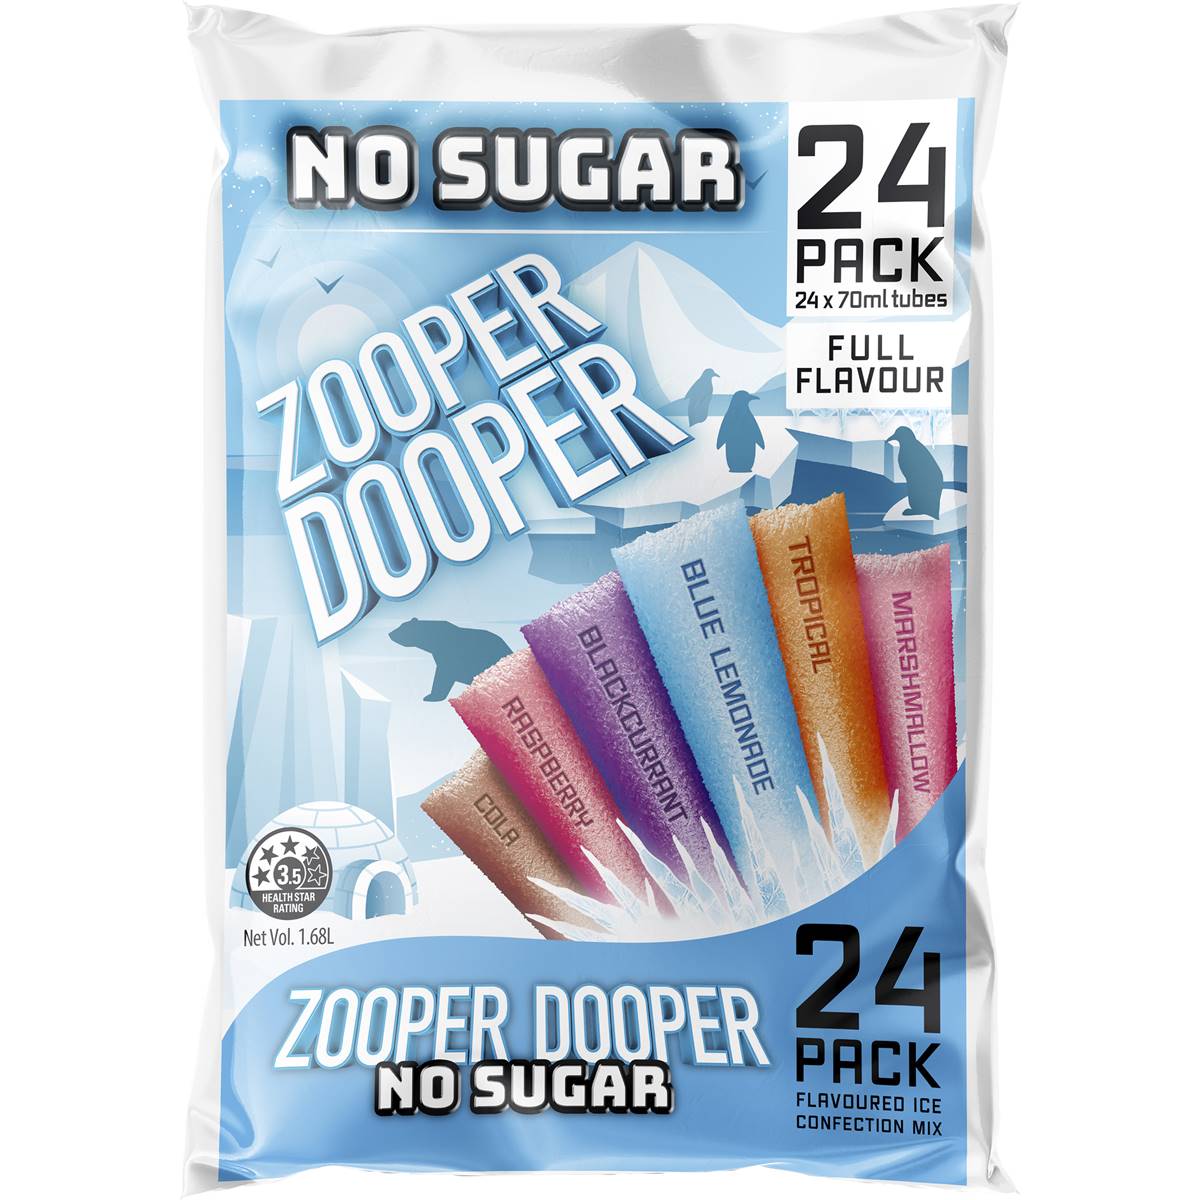 Calories in Zooper Dooper No Sugar